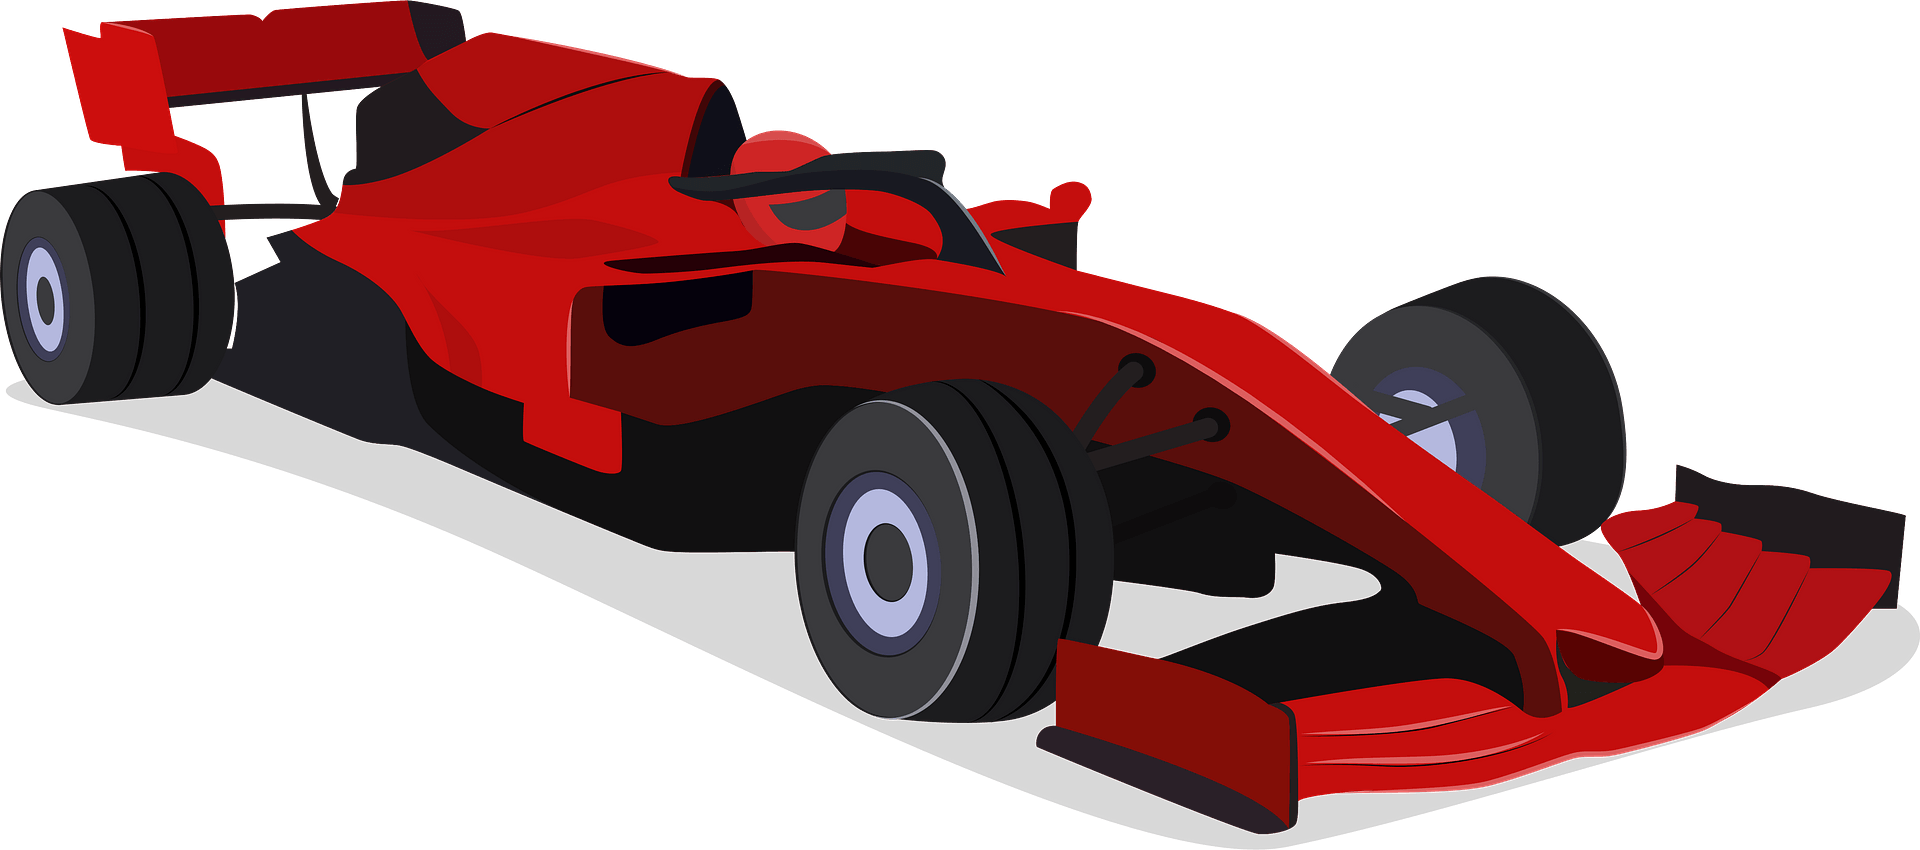 F1 Ferrari PNG Photo Image